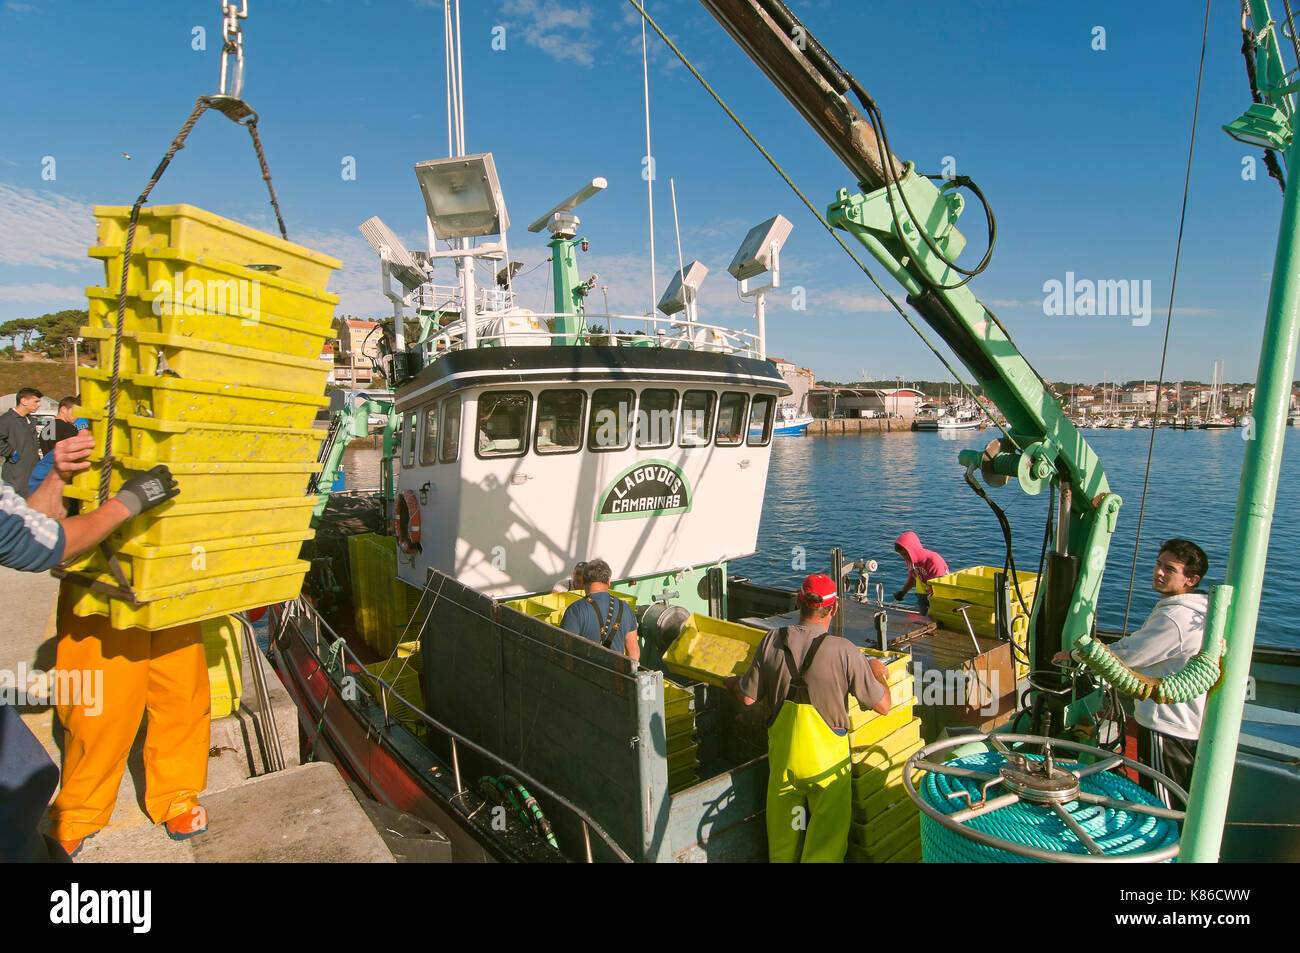 Bateau de pêche Téléchargement de boîtes de poissons, Camarinas, province de la Coruna, région de Galice, Espagne, Europe Banque D'Images